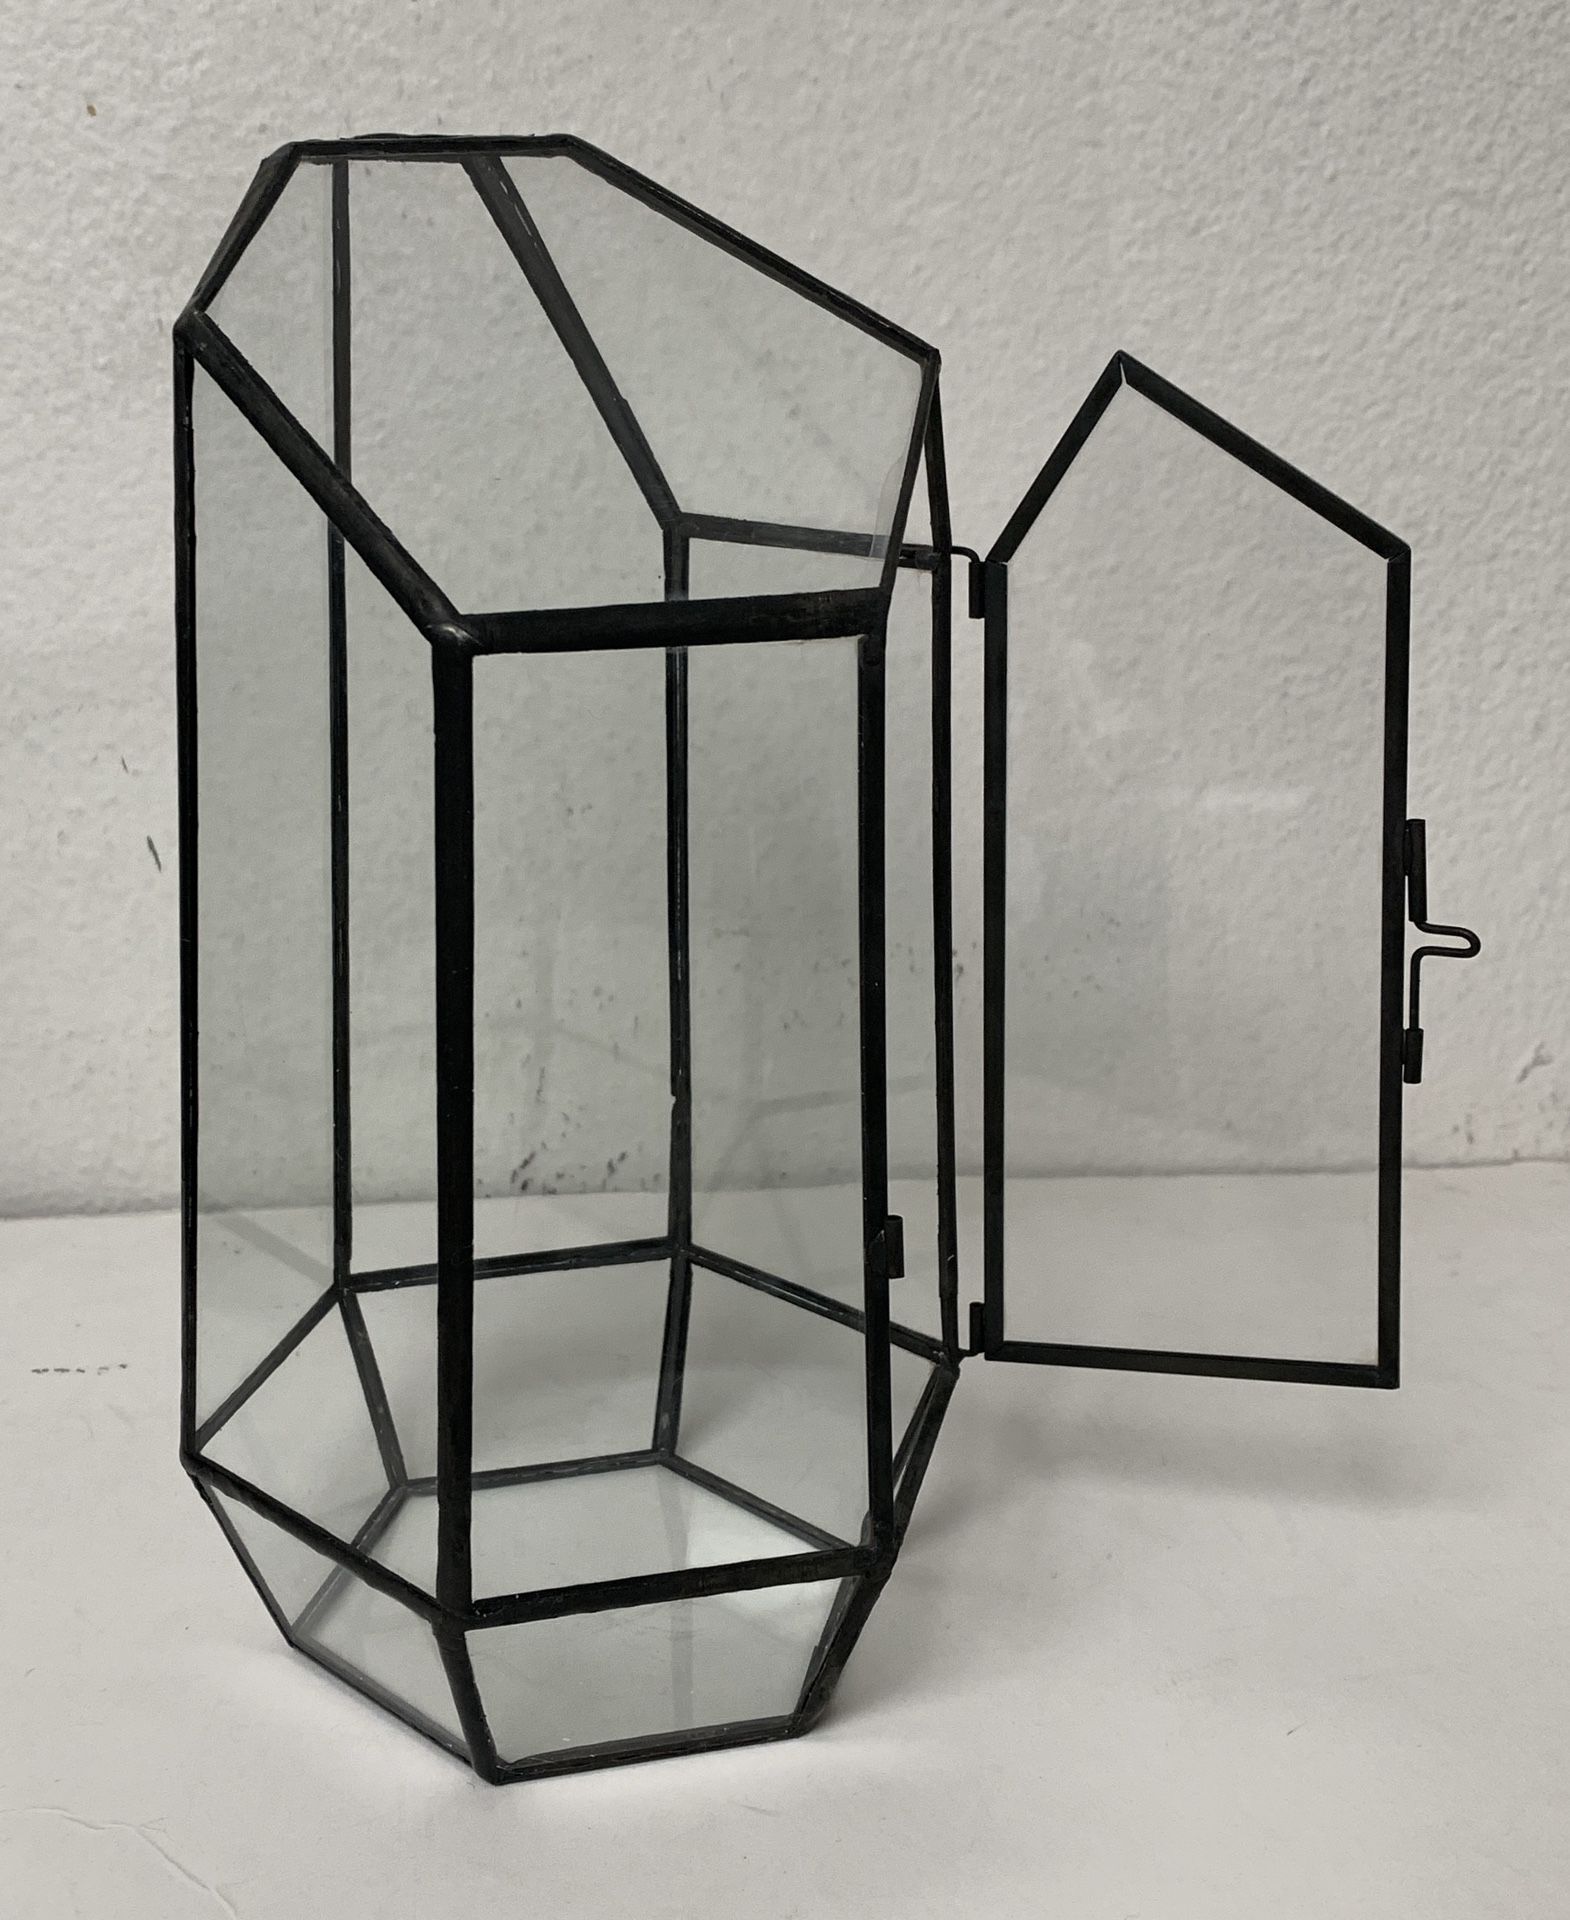 8 3/4” Geometric Terrarium Glass With Door Lock Miniature Air Plant Garden Planter Succulent 